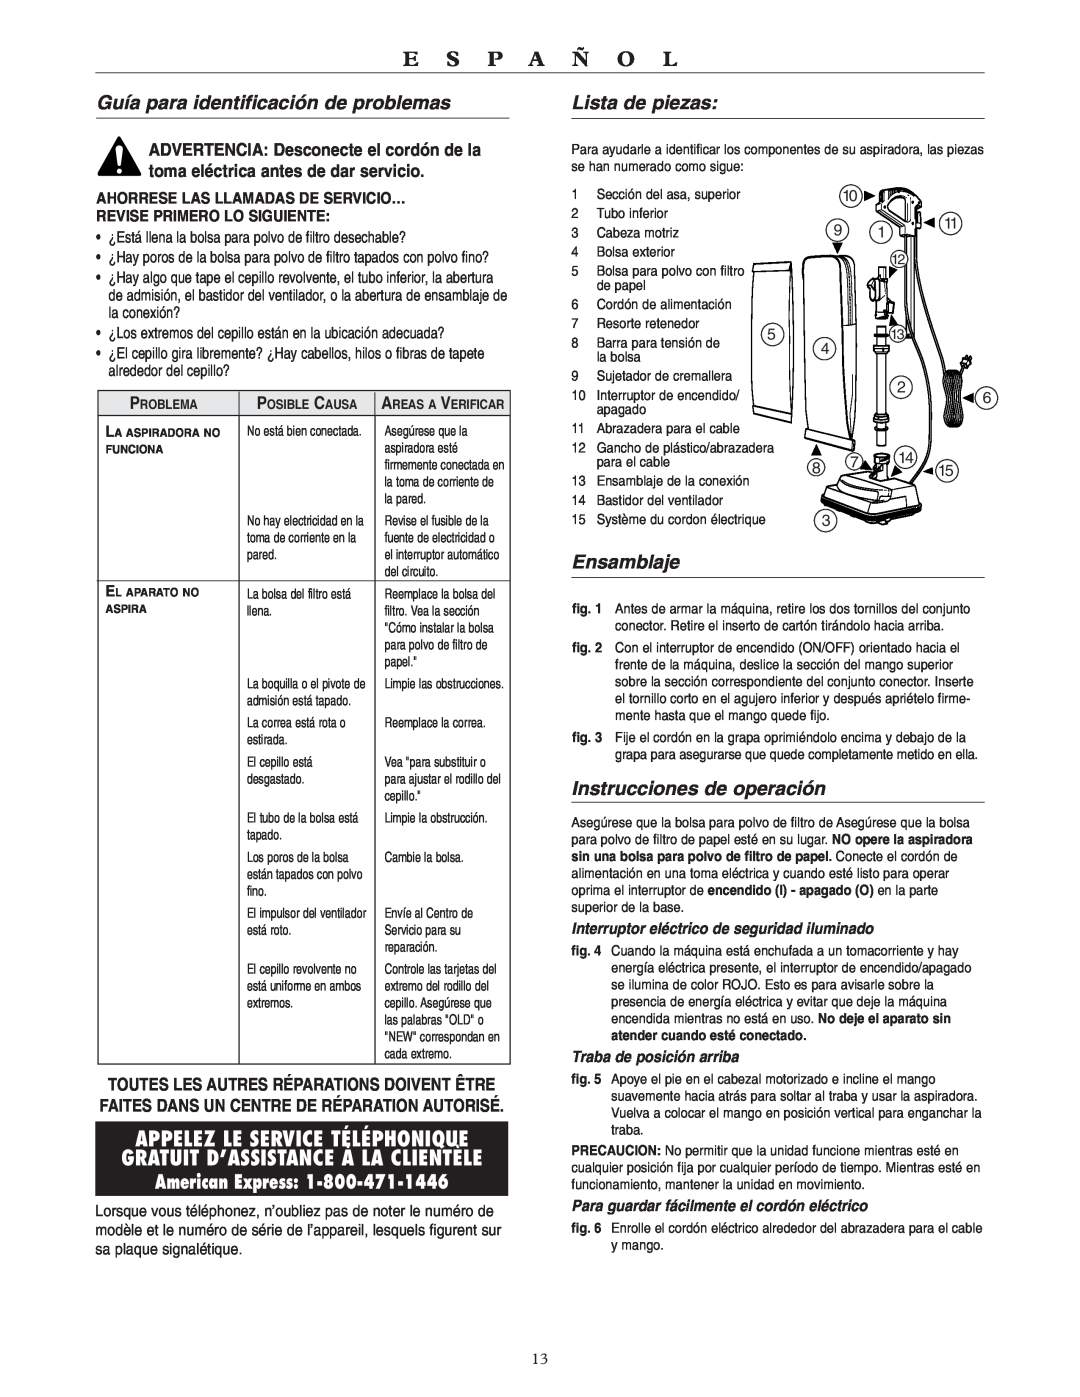 Oreck U3700HH warranty Guía para identificación de problemas, Lista de piezas, Ensamblaje, Instrucciones de operación 